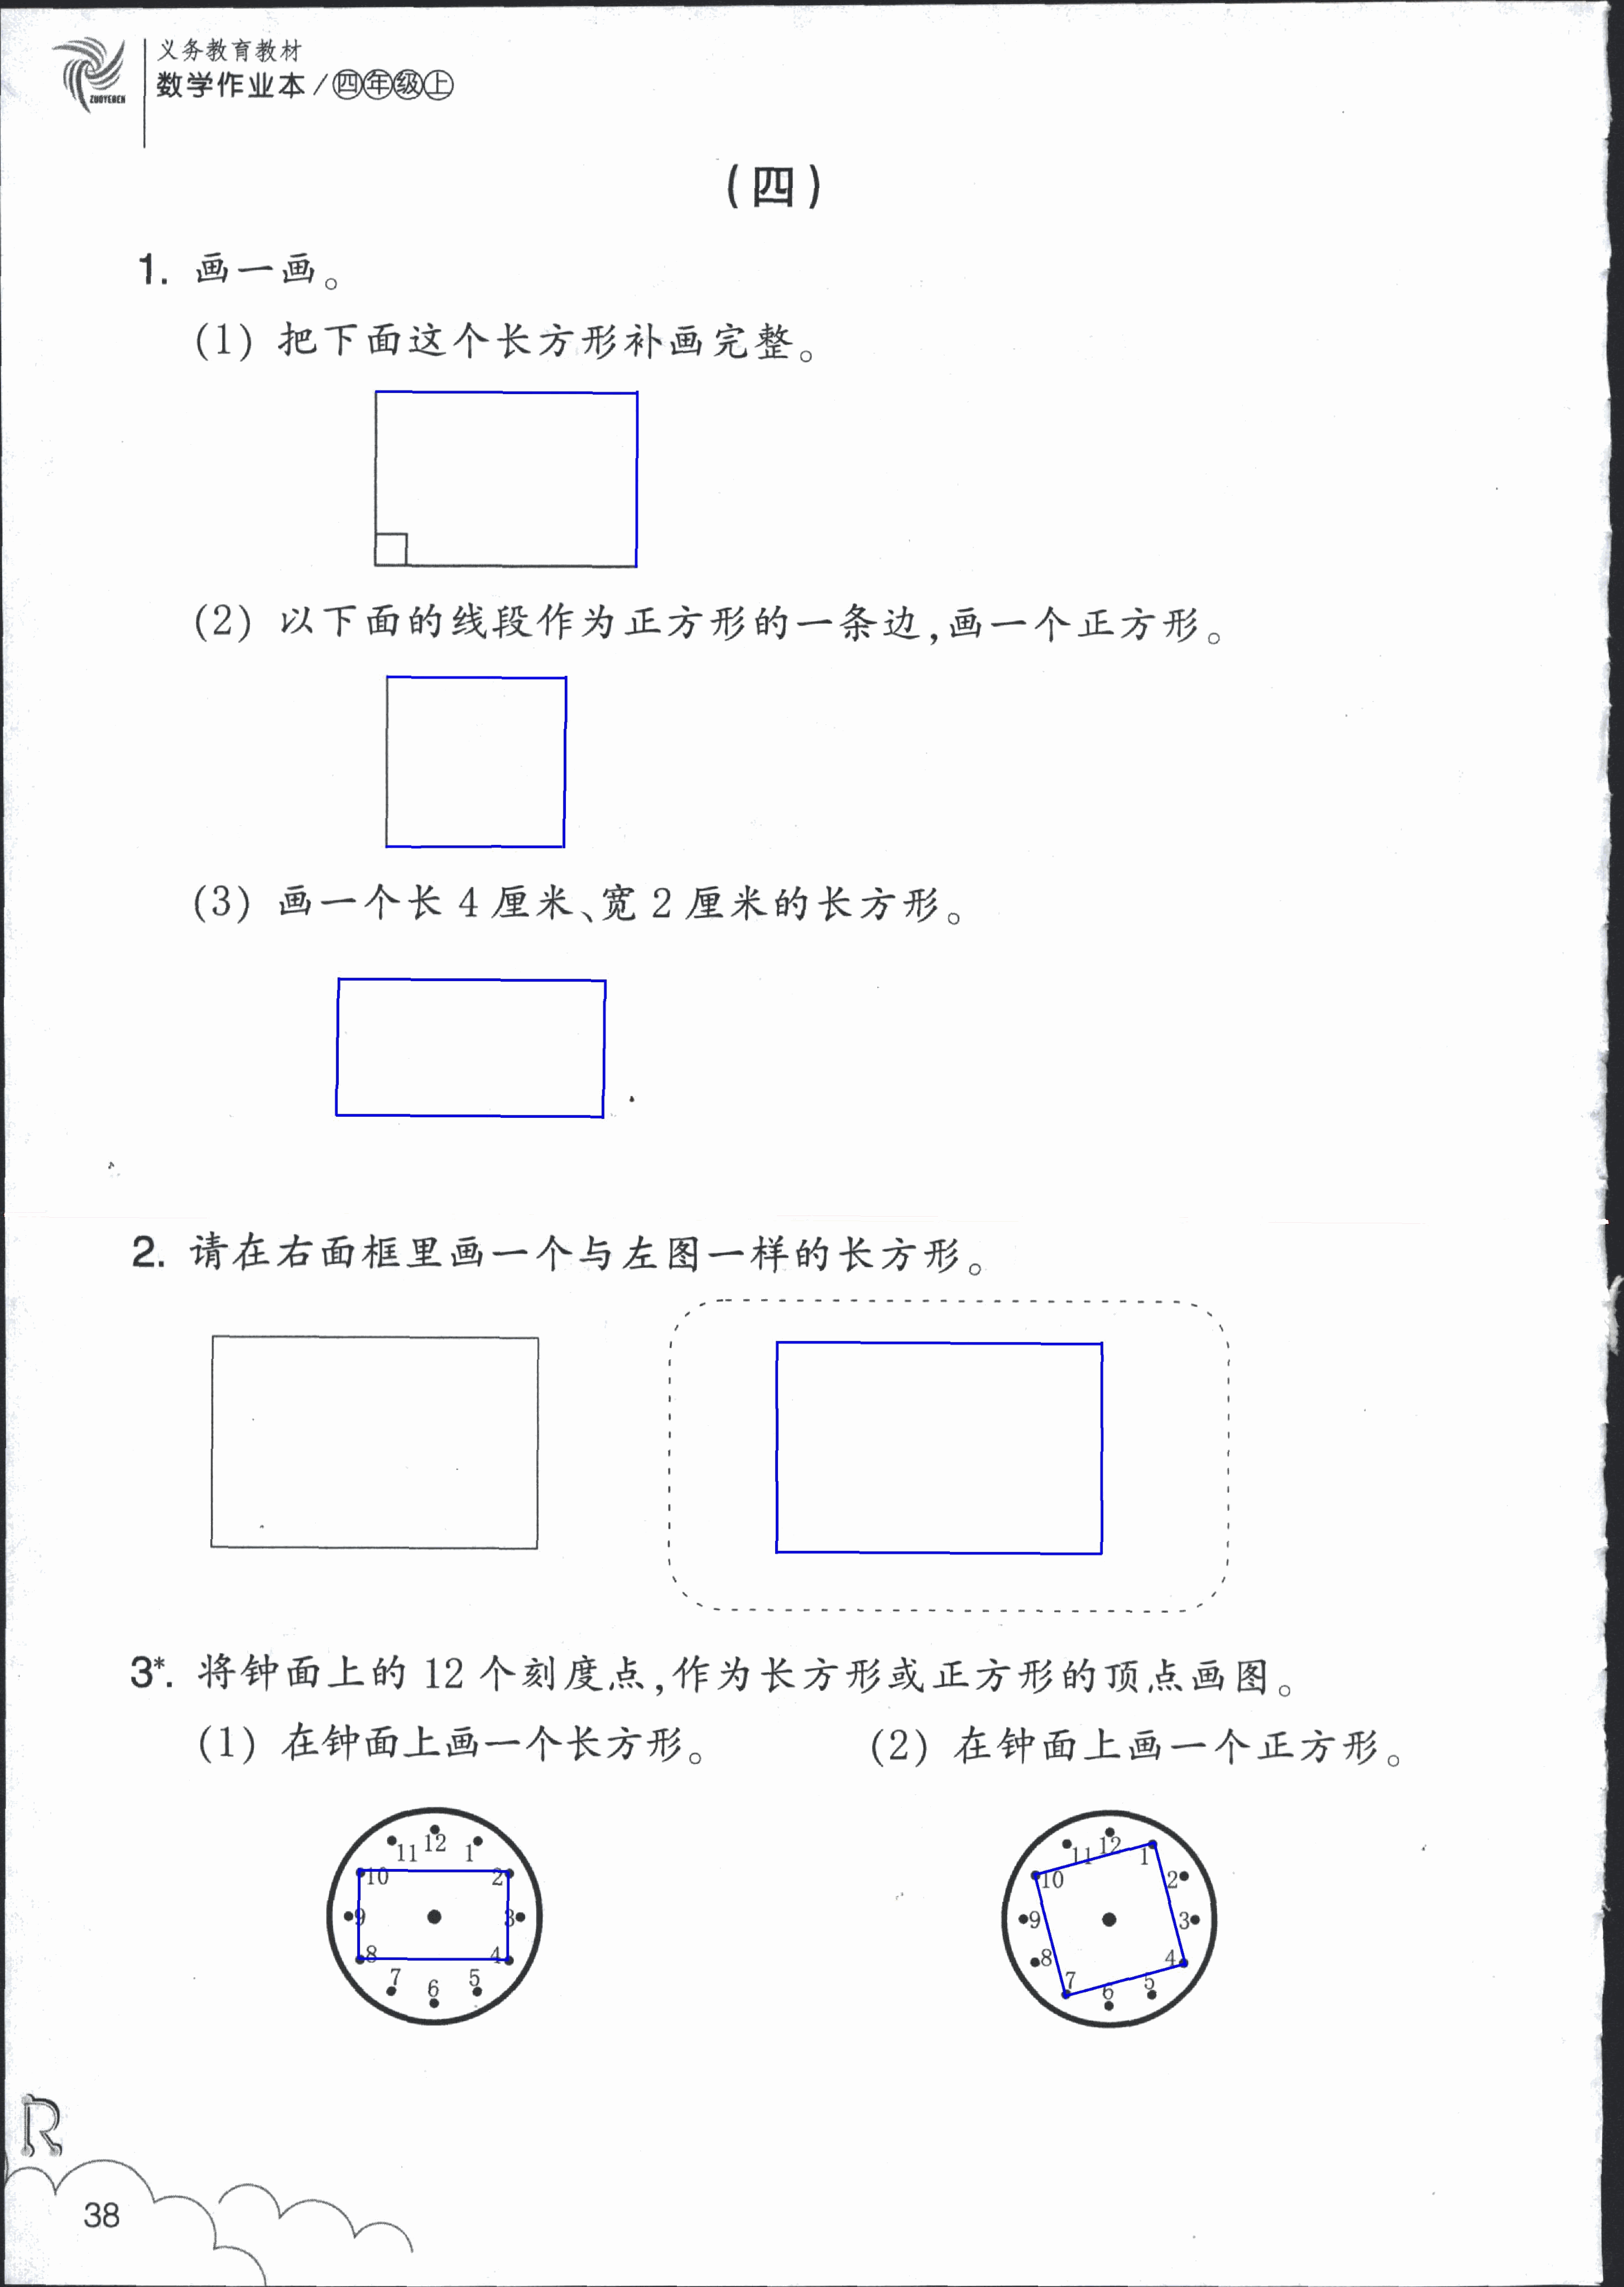 数学作业本 第38页